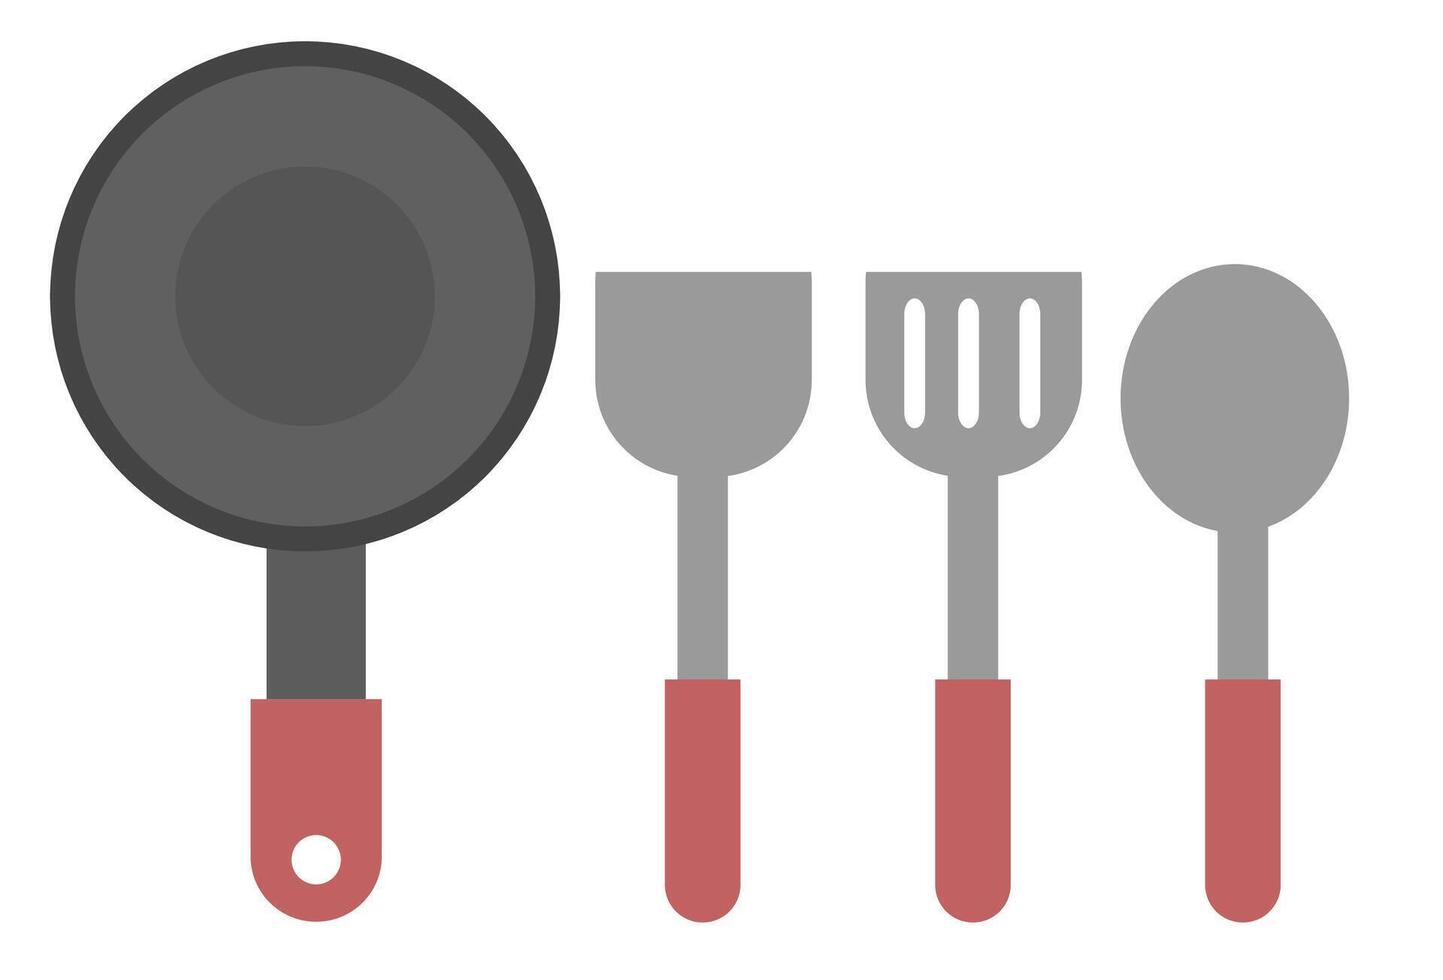 poêle, spatule et louche équipement.ustensiles de cuisine pour cuisine.sign, symbole, icône ou logo isolé.dessin animé illustration. vecteur